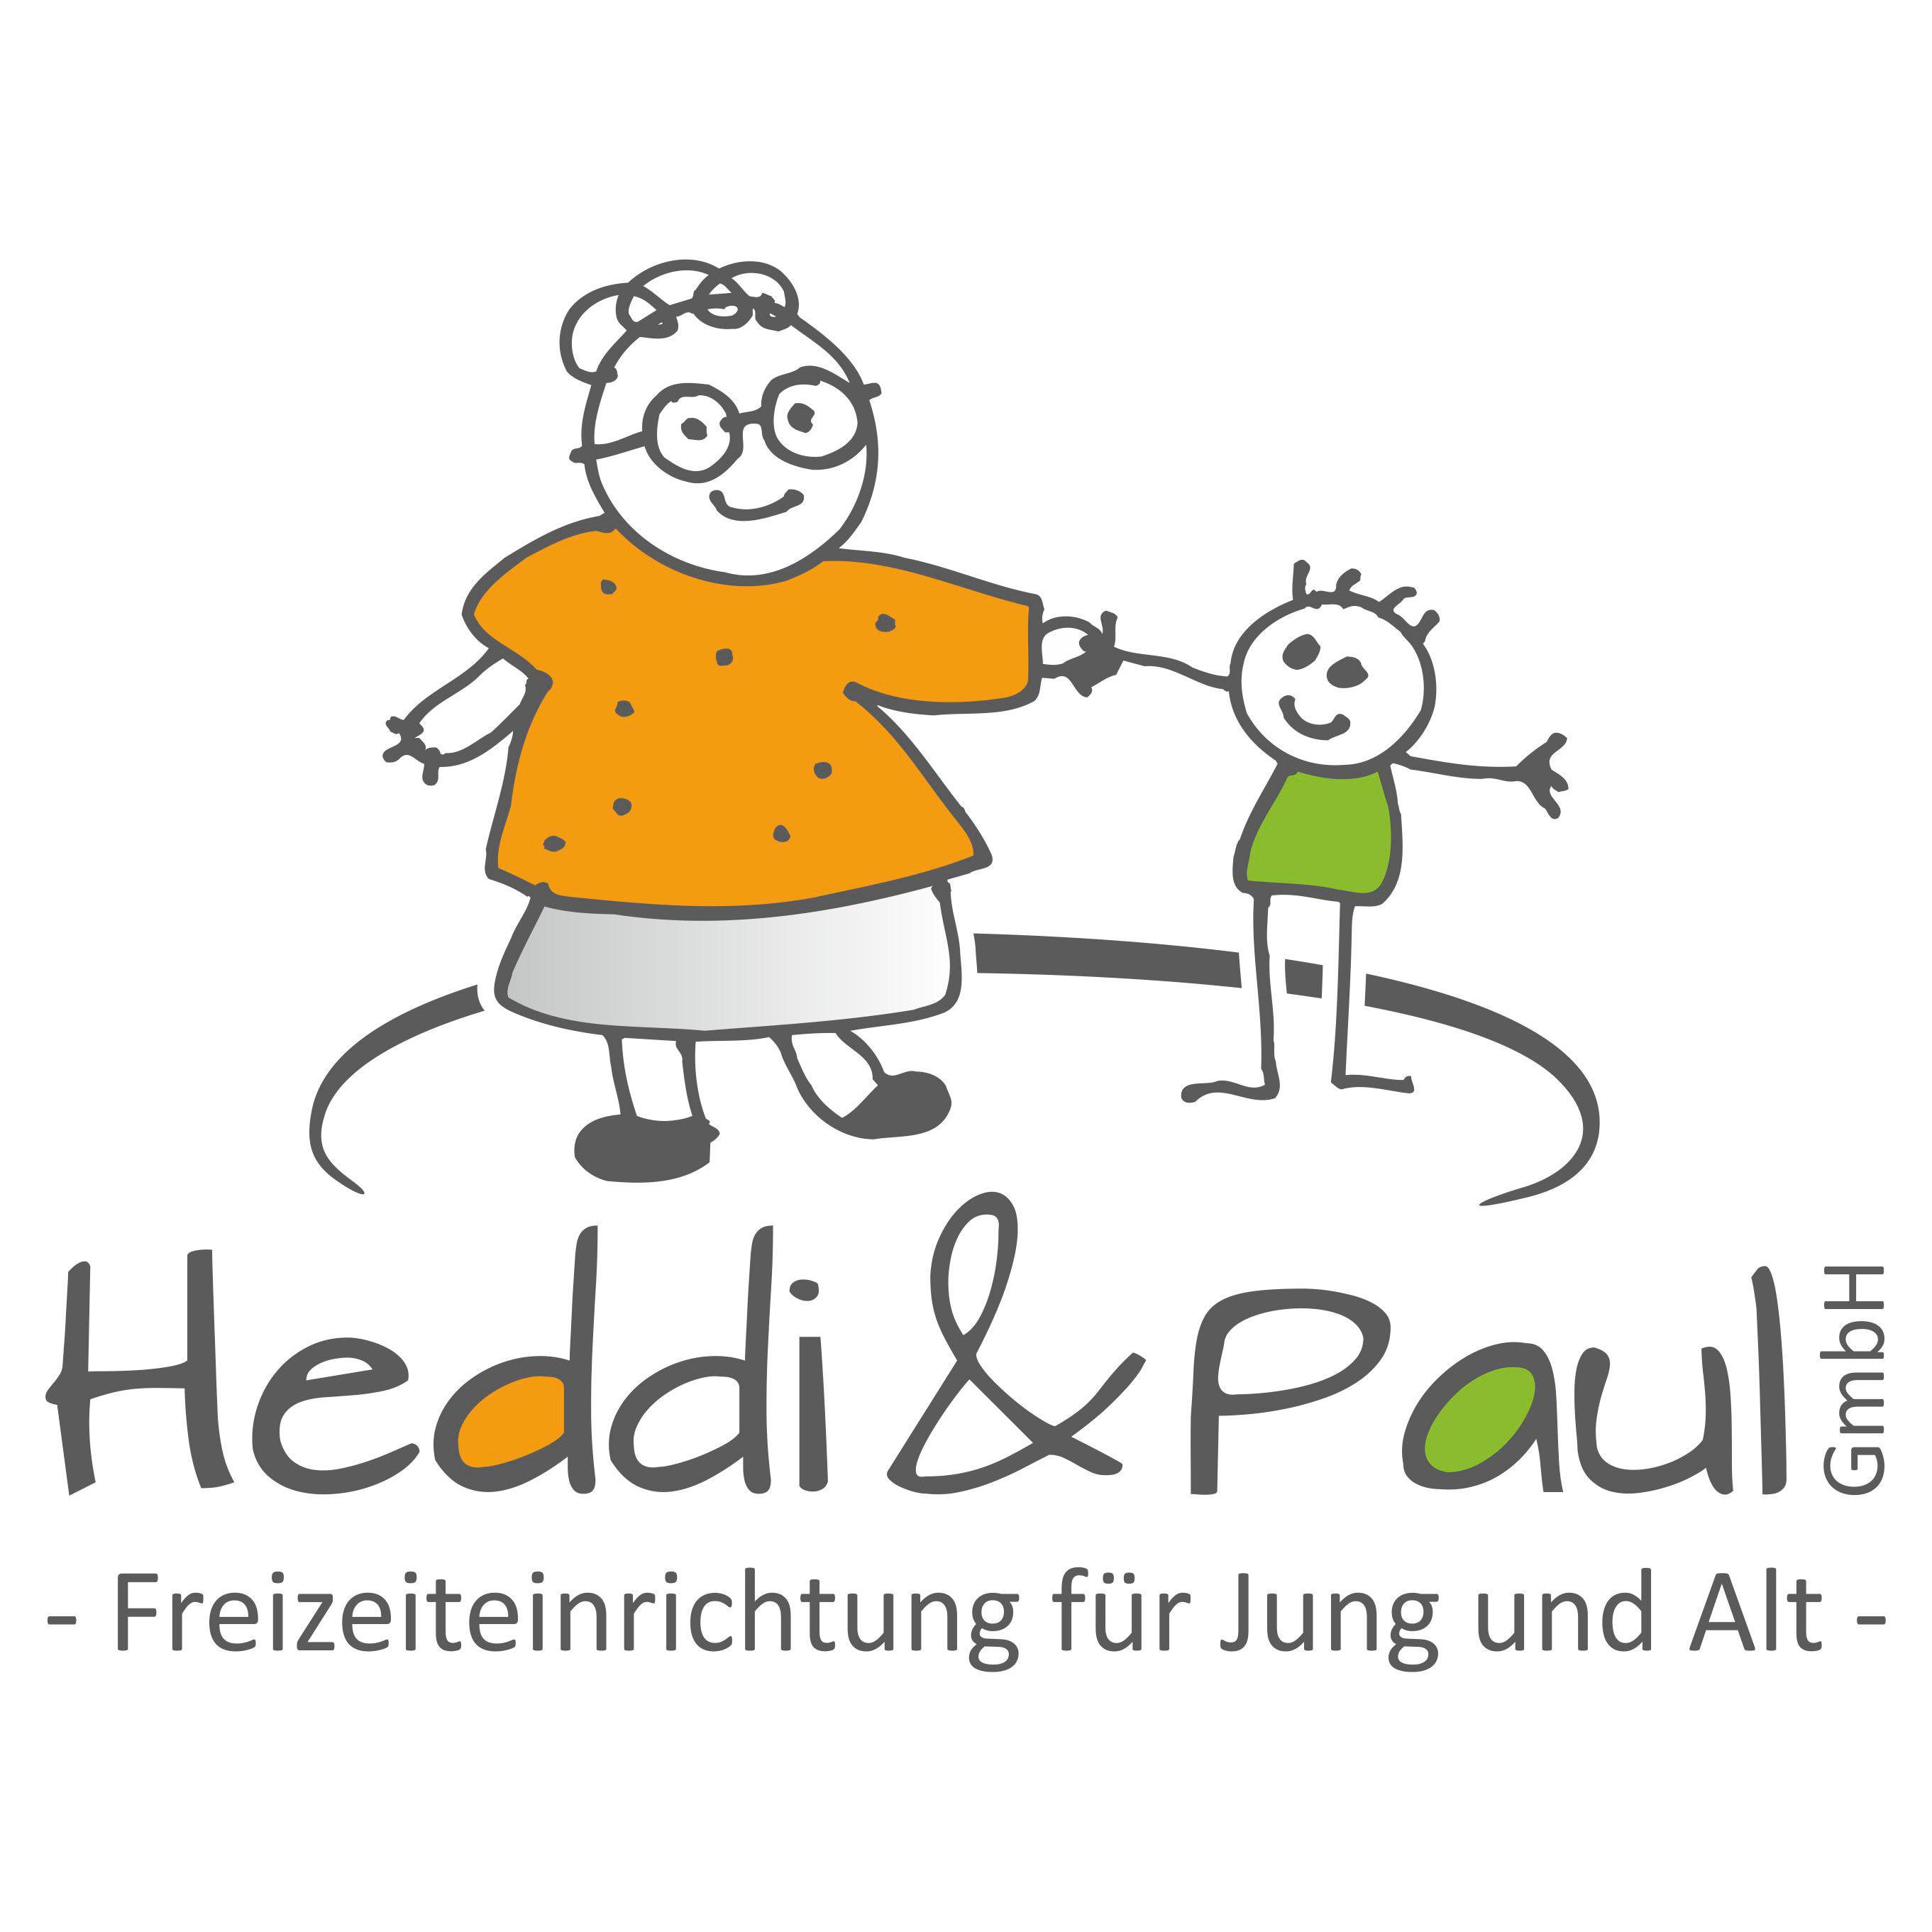 Heddi & Paul GmbH Freizeiteinrichtung für Jung bis Alt Logo